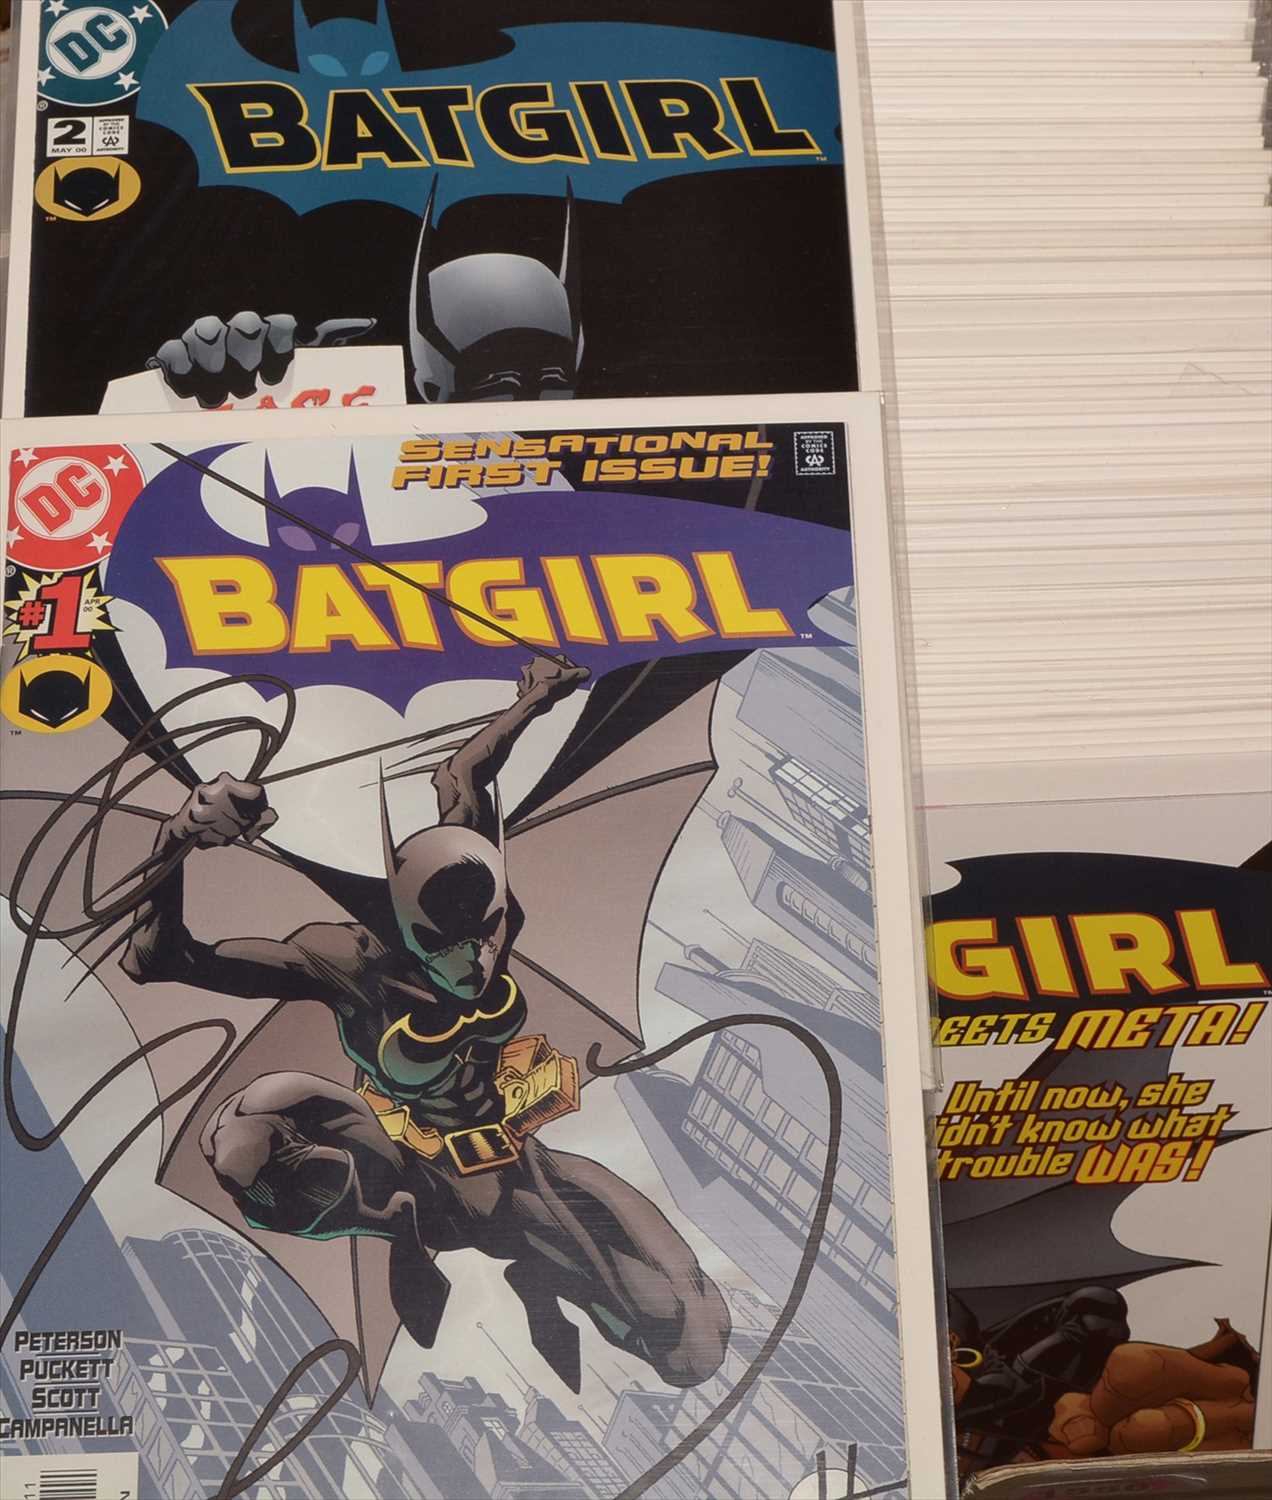 Lot 1556 - Batgirl No's. 1-72